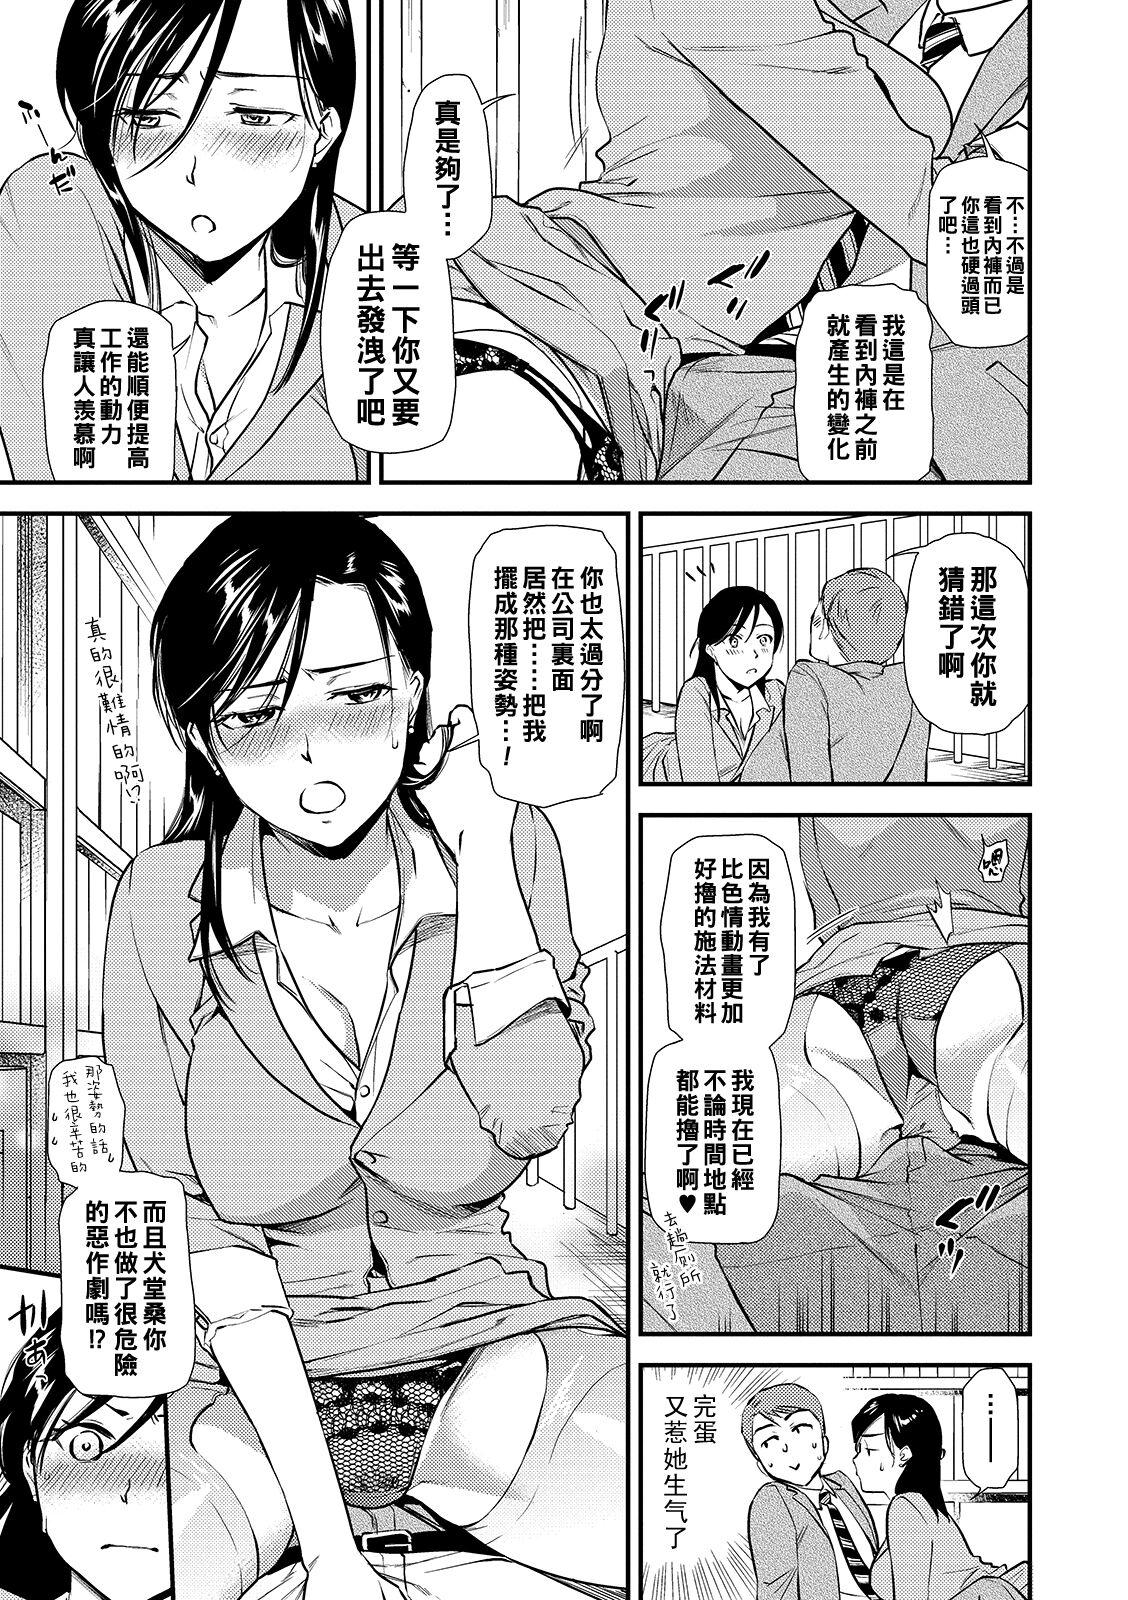 Groupfuck InuSaru Survive 2 This - Page 5